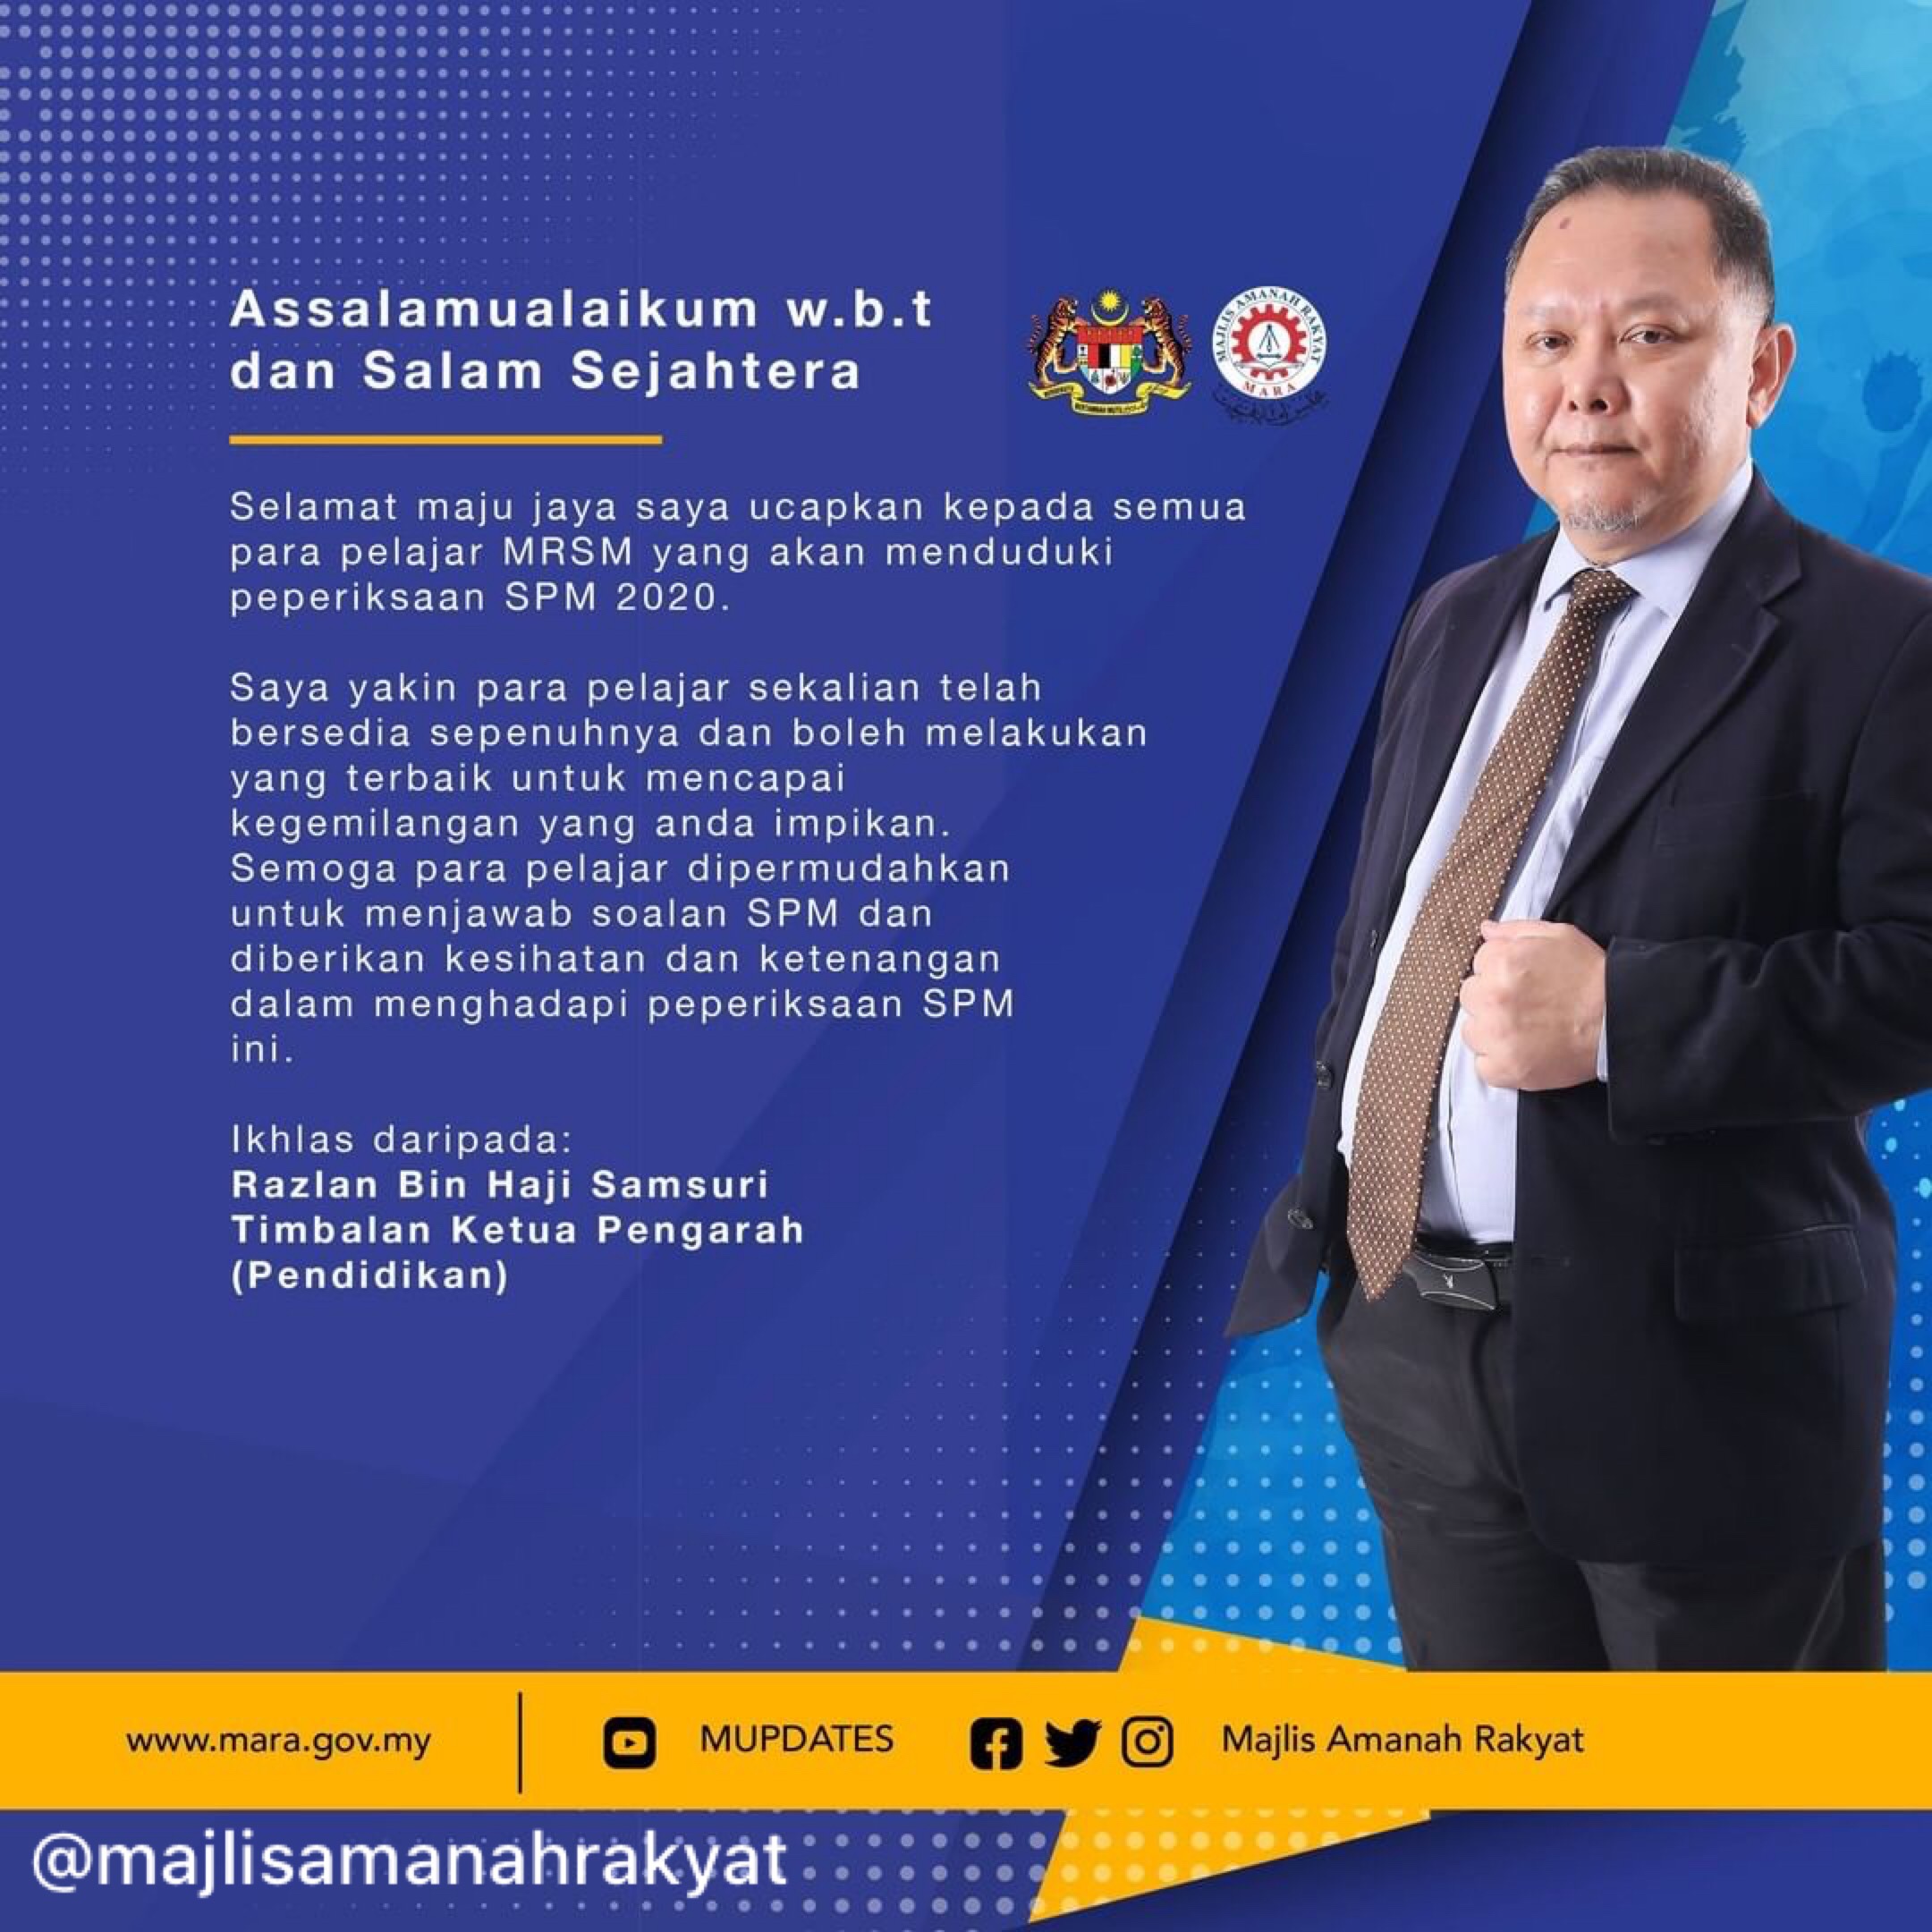 Ketua pengarah pendidikan malaysia 2021